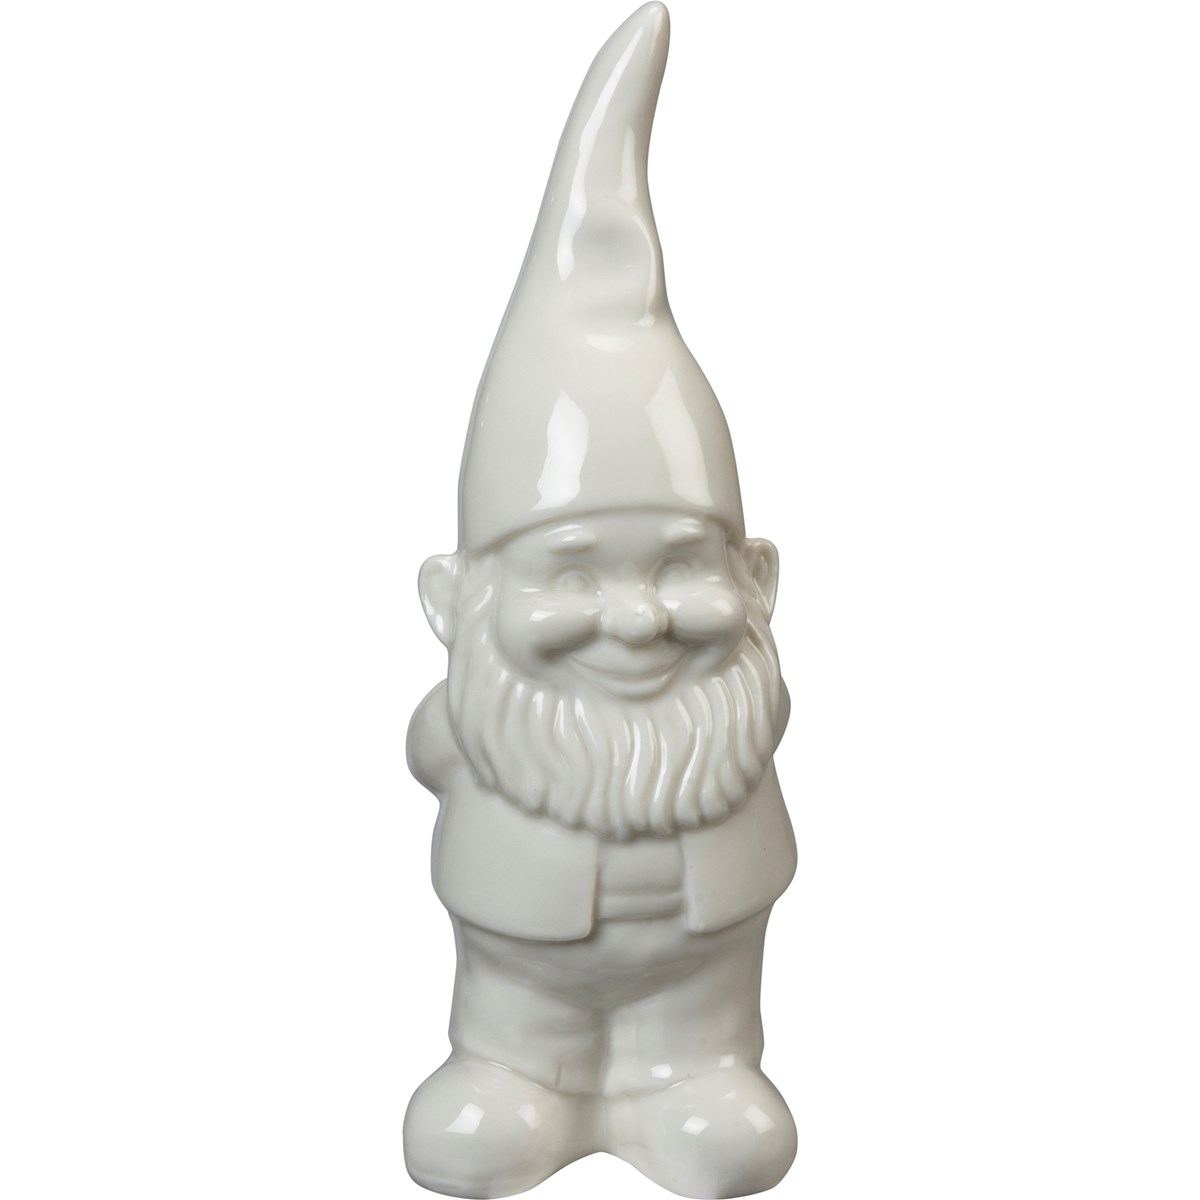 Standing Gnome Small Figurine - Ceramic